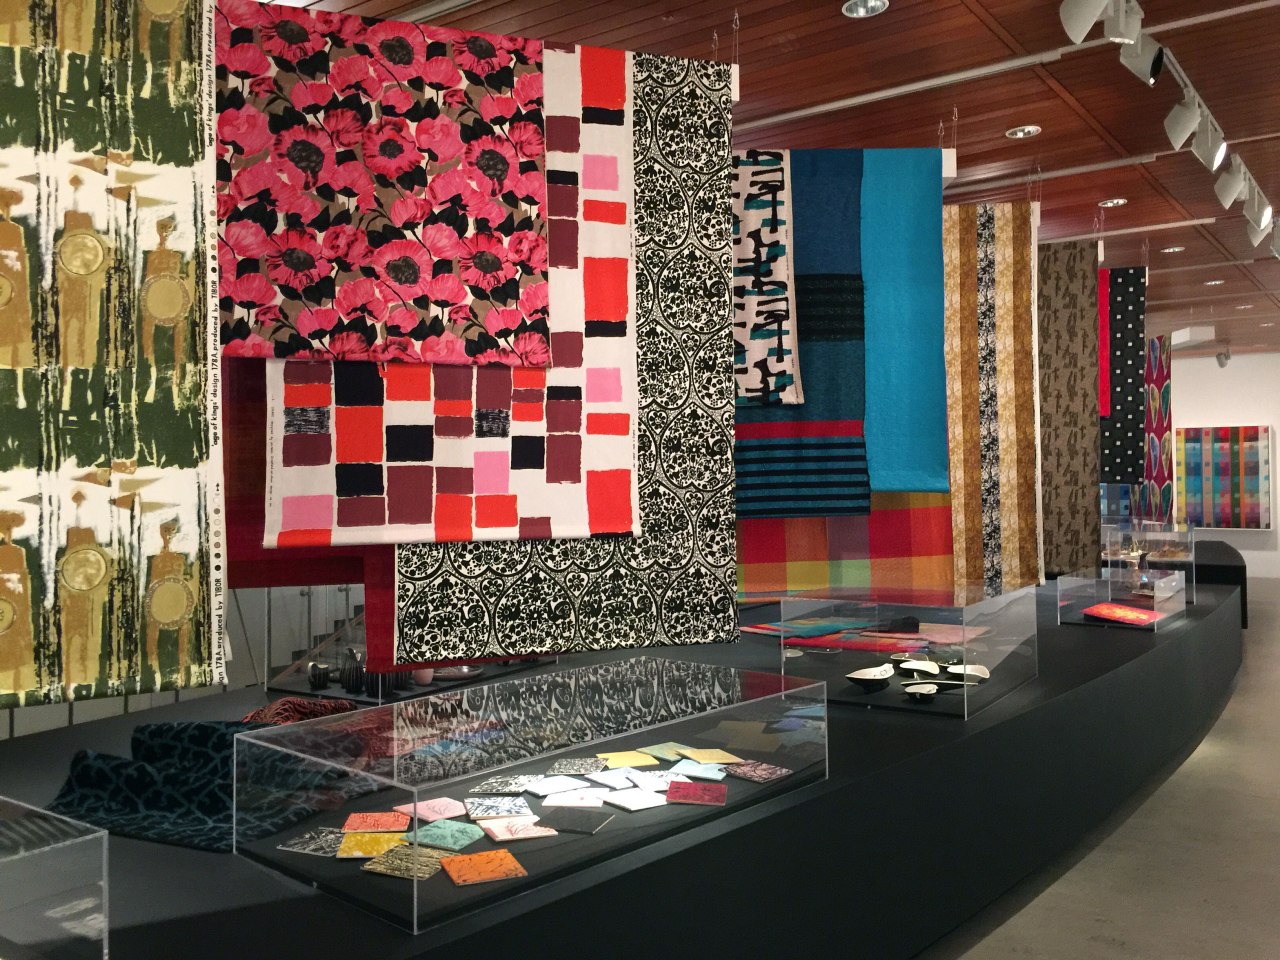 Whitworth Gallery Textiles Exhibitions Review | Cari Morton Studio